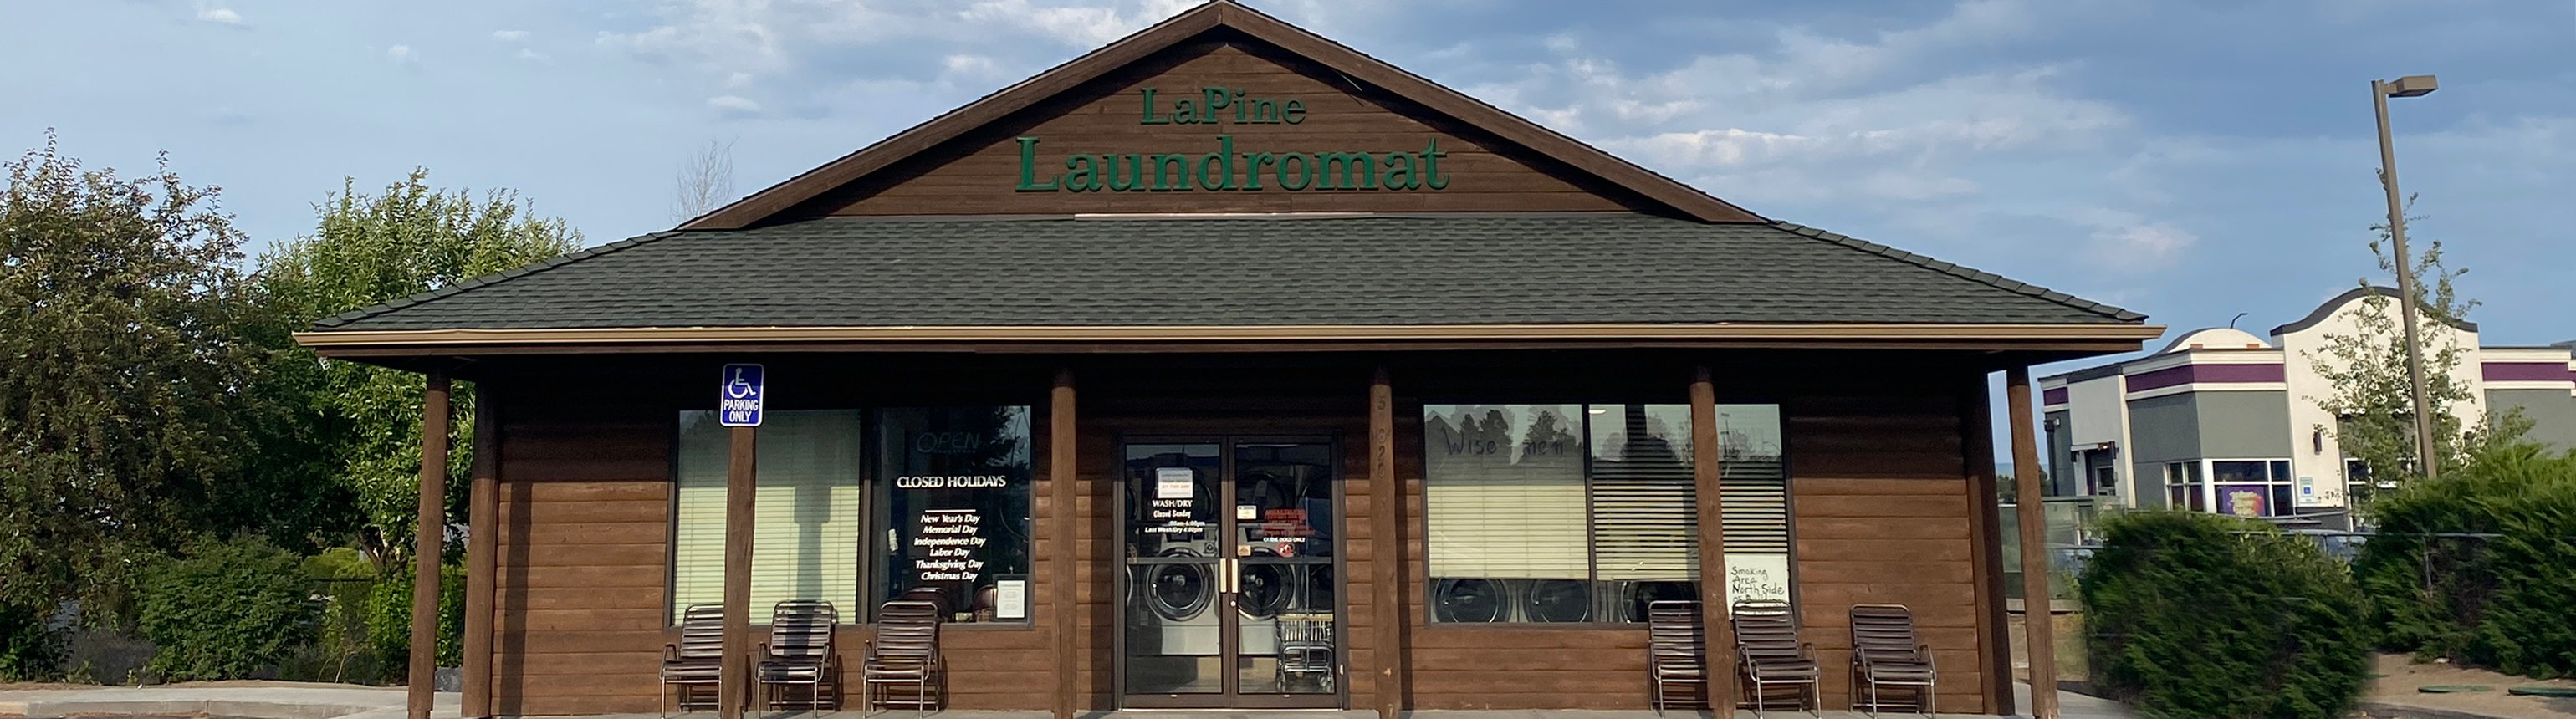 La Pine Laundromat exterior storefont